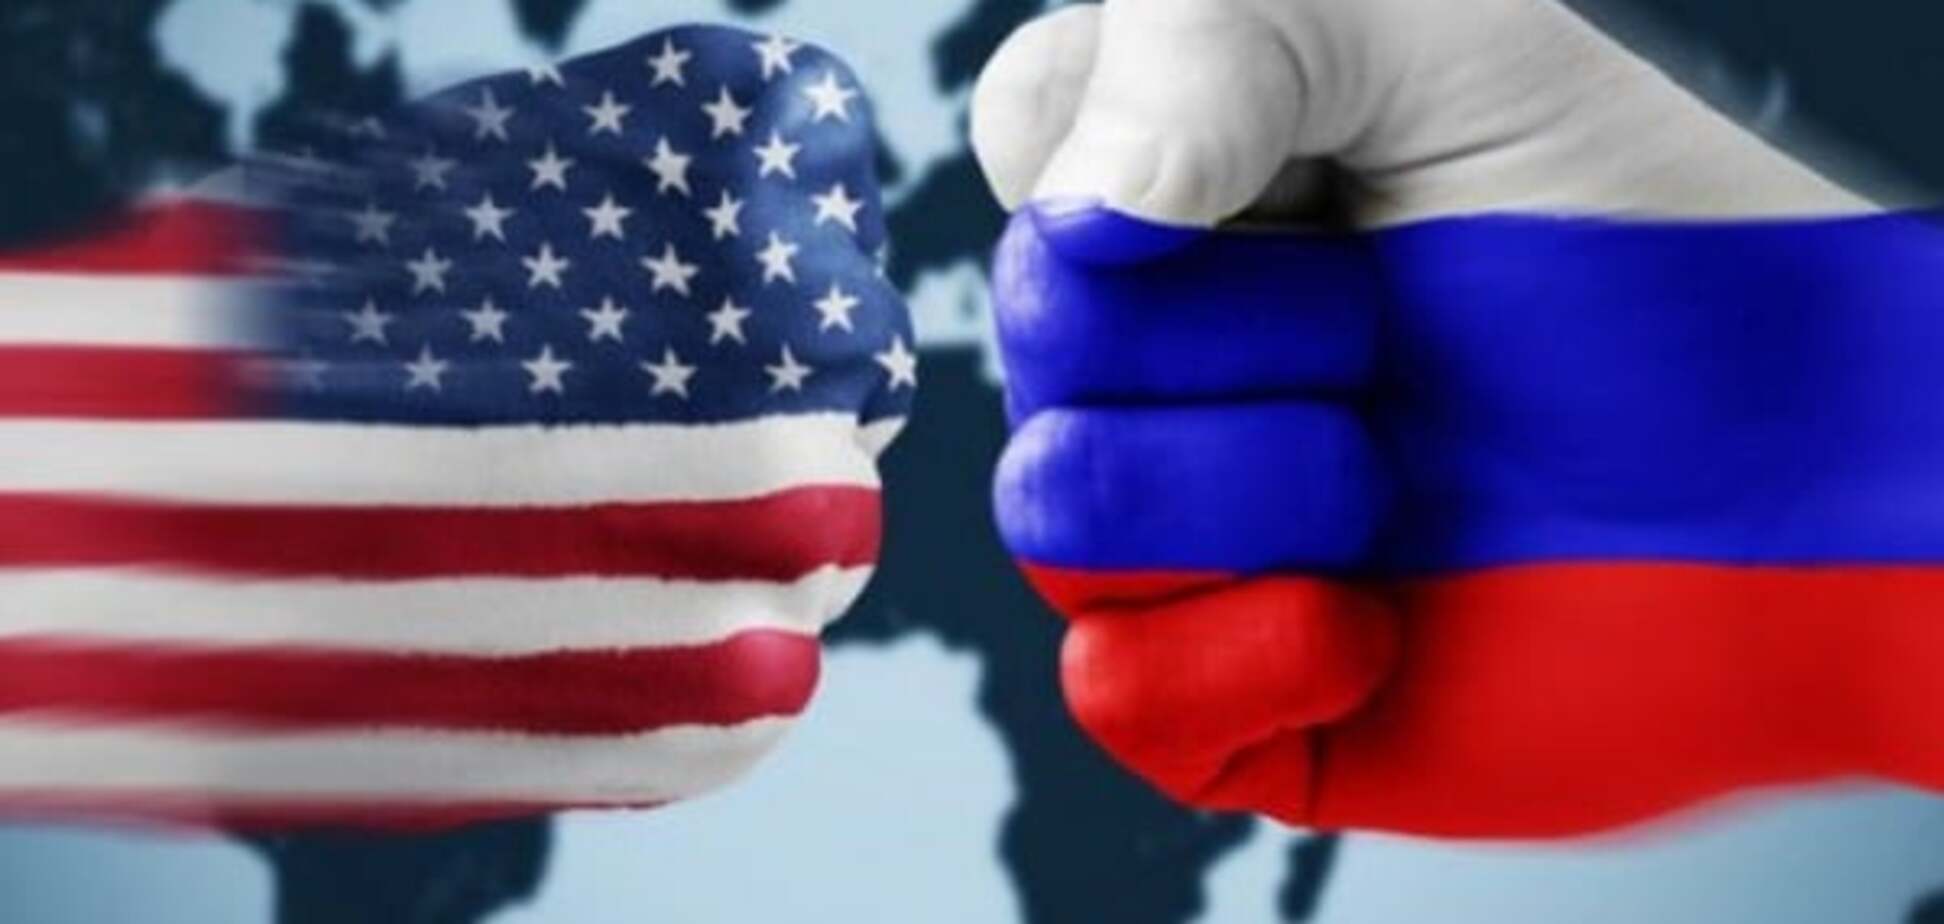 США против России